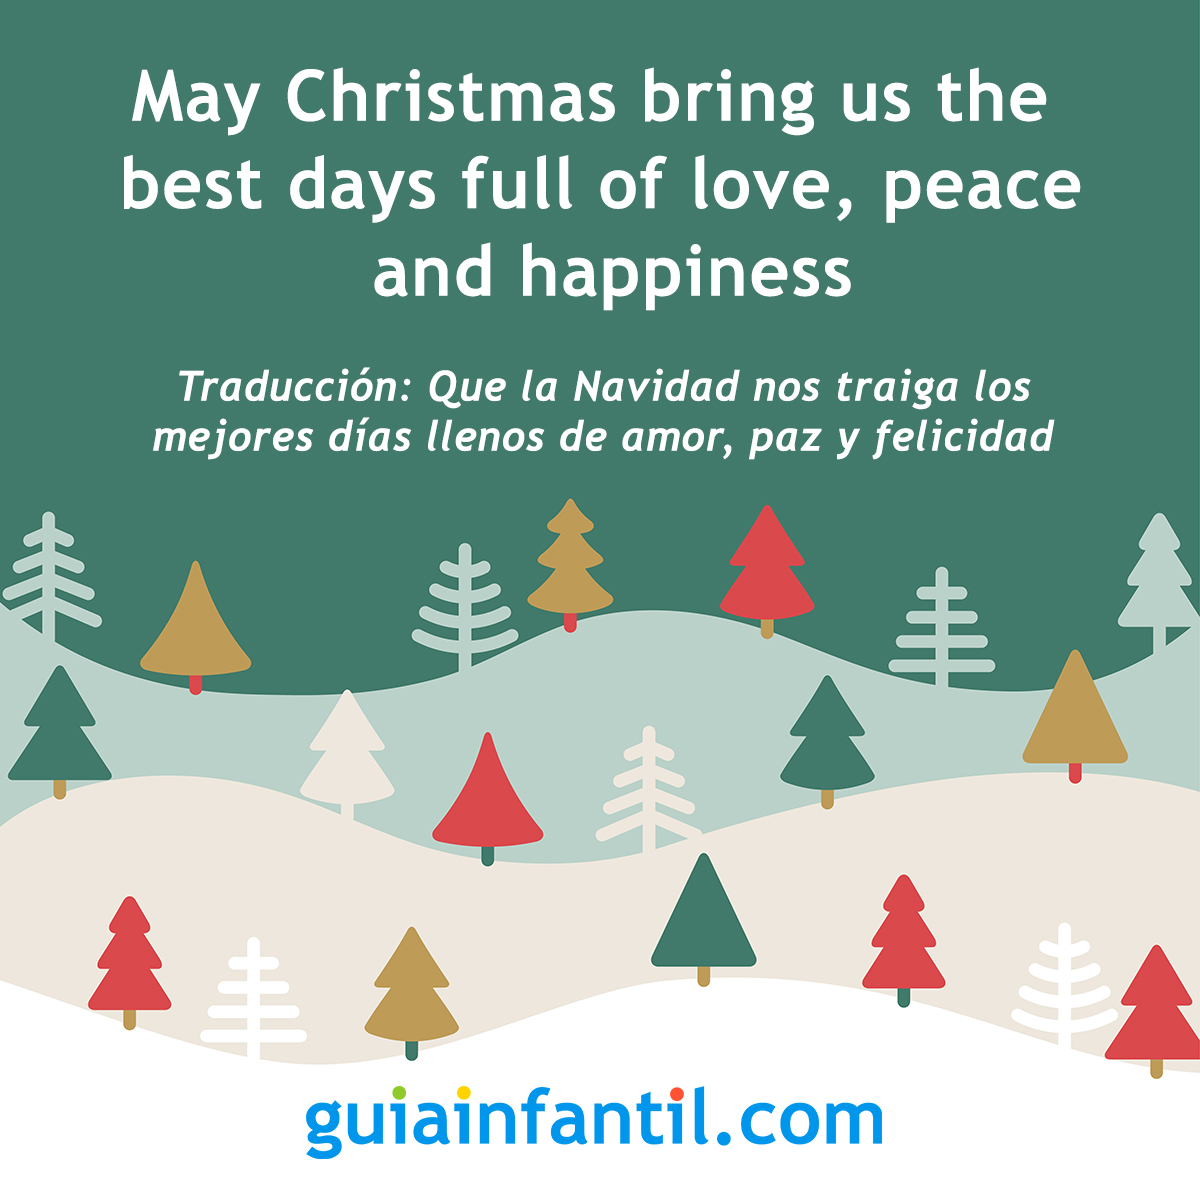 Compartir 76+ imagen oraciones sobre la navidad en ingles